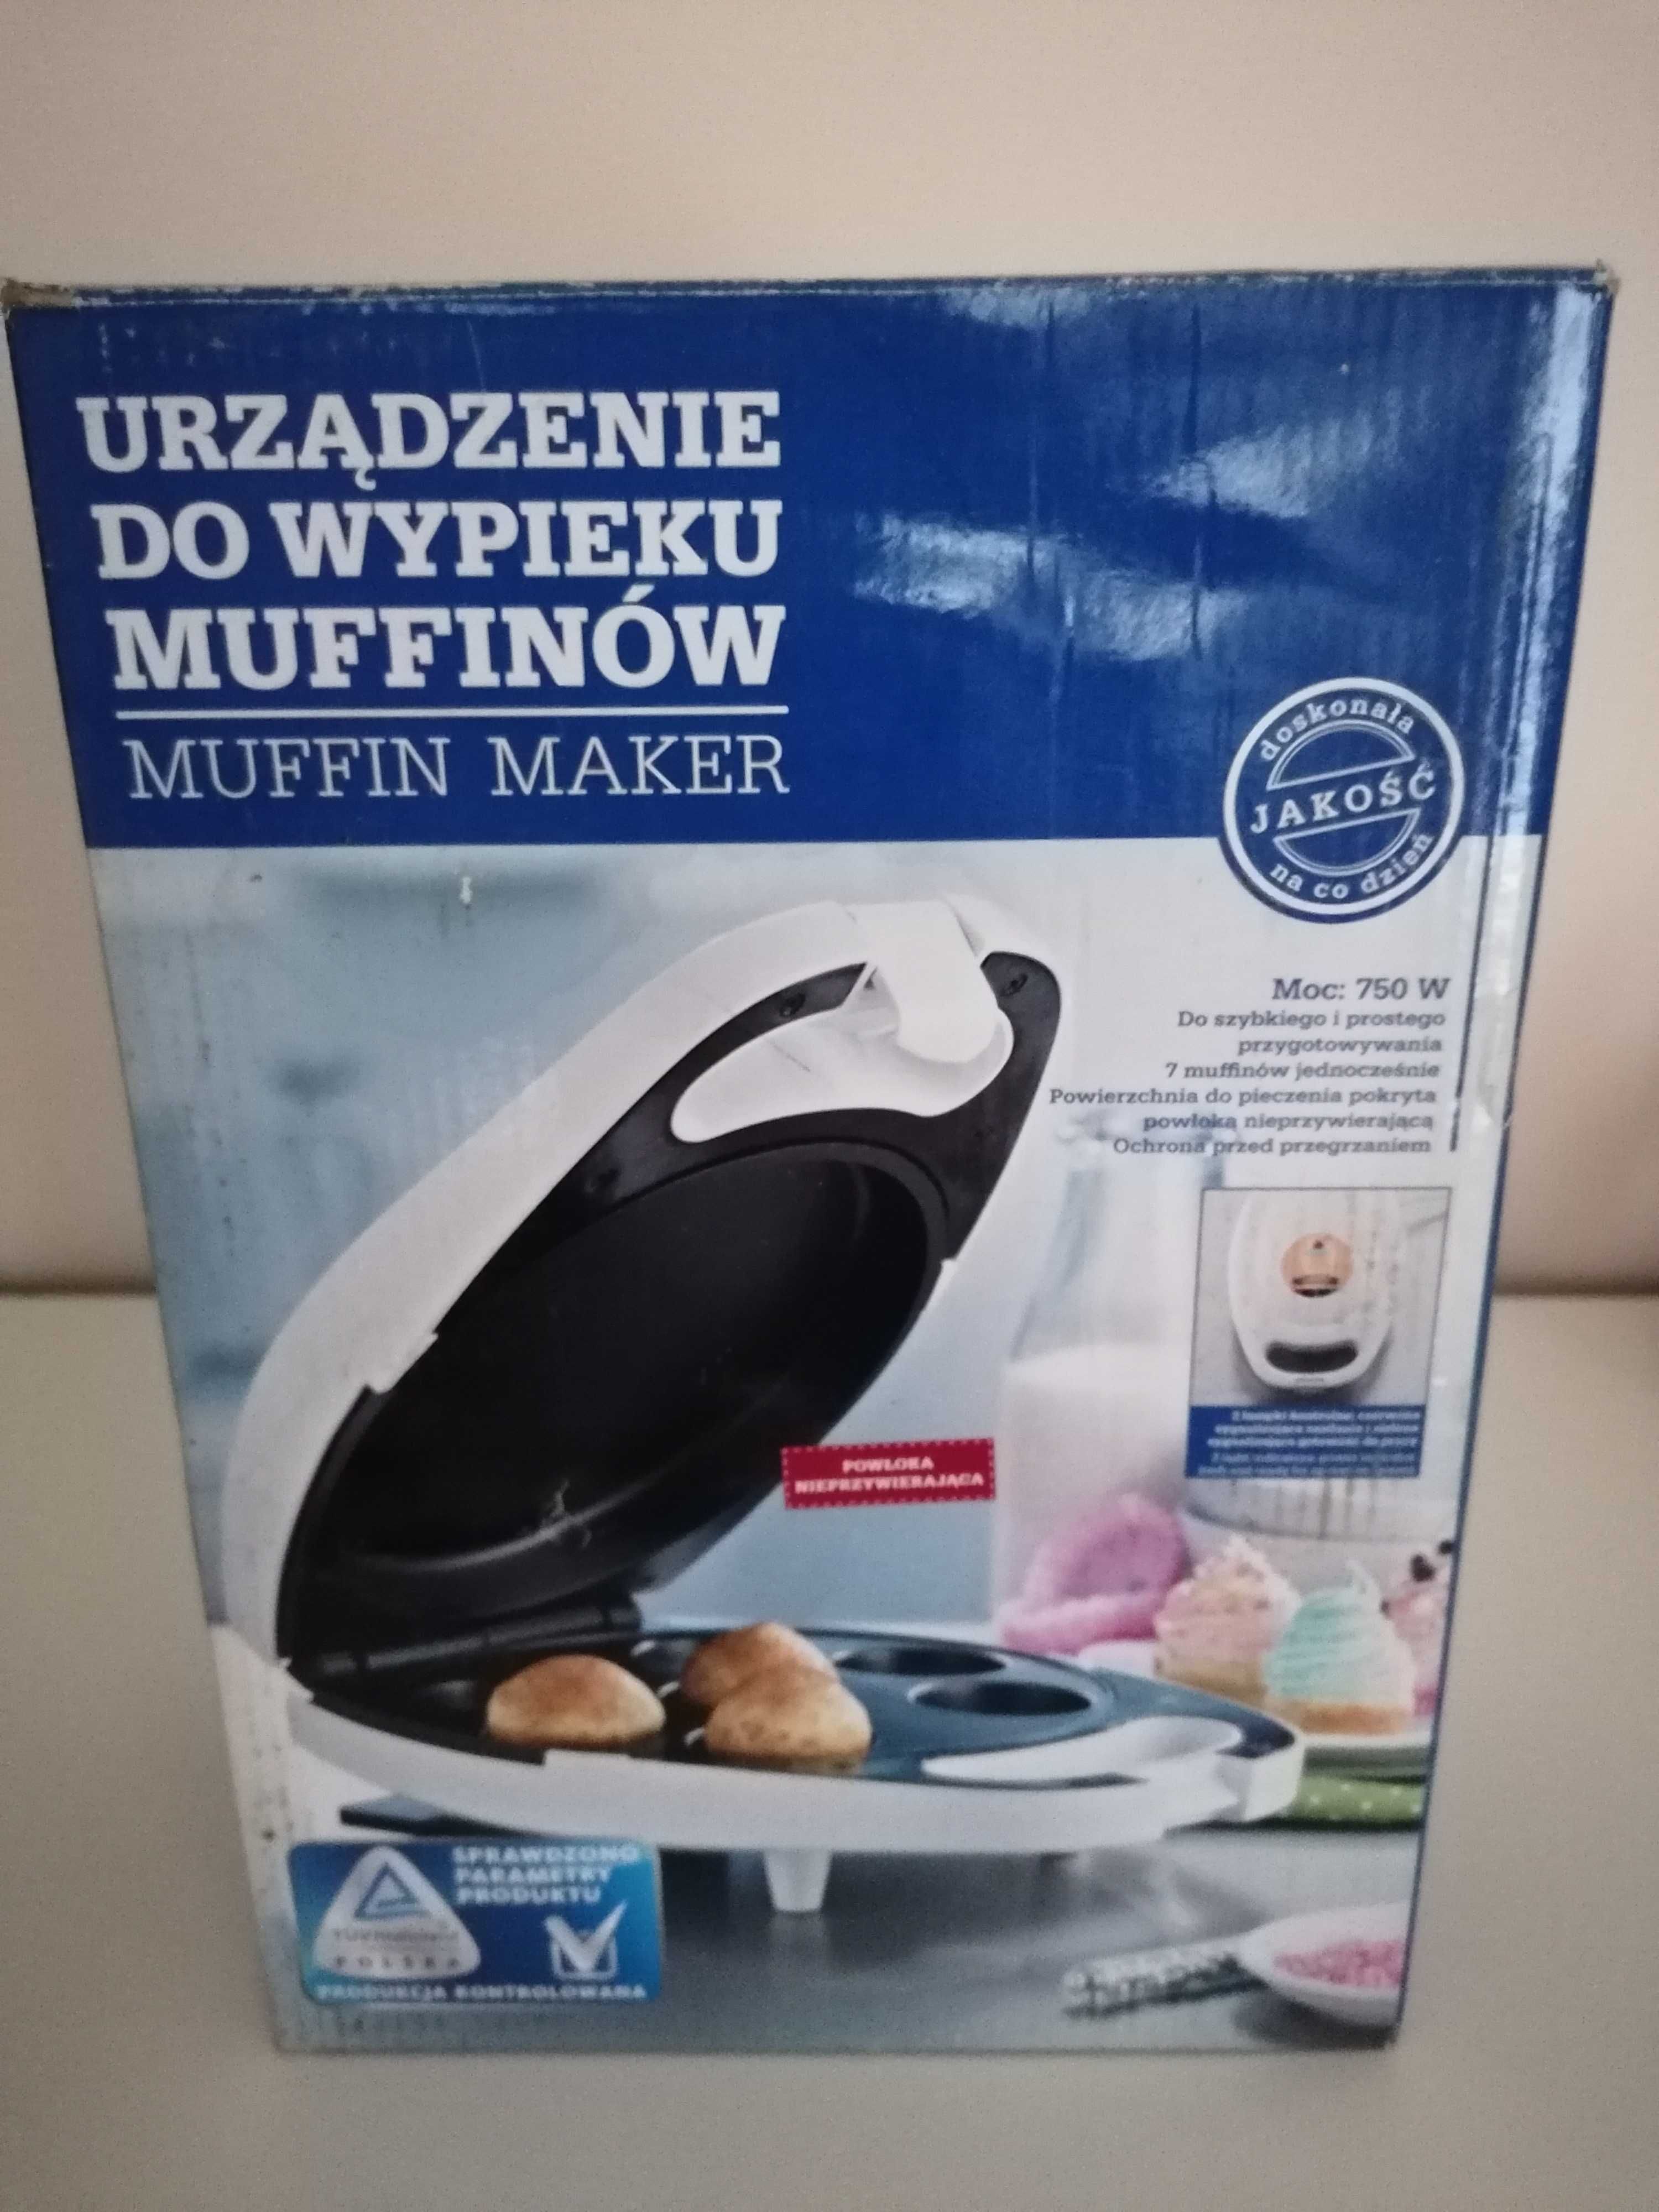 Urządzenie do muffinow